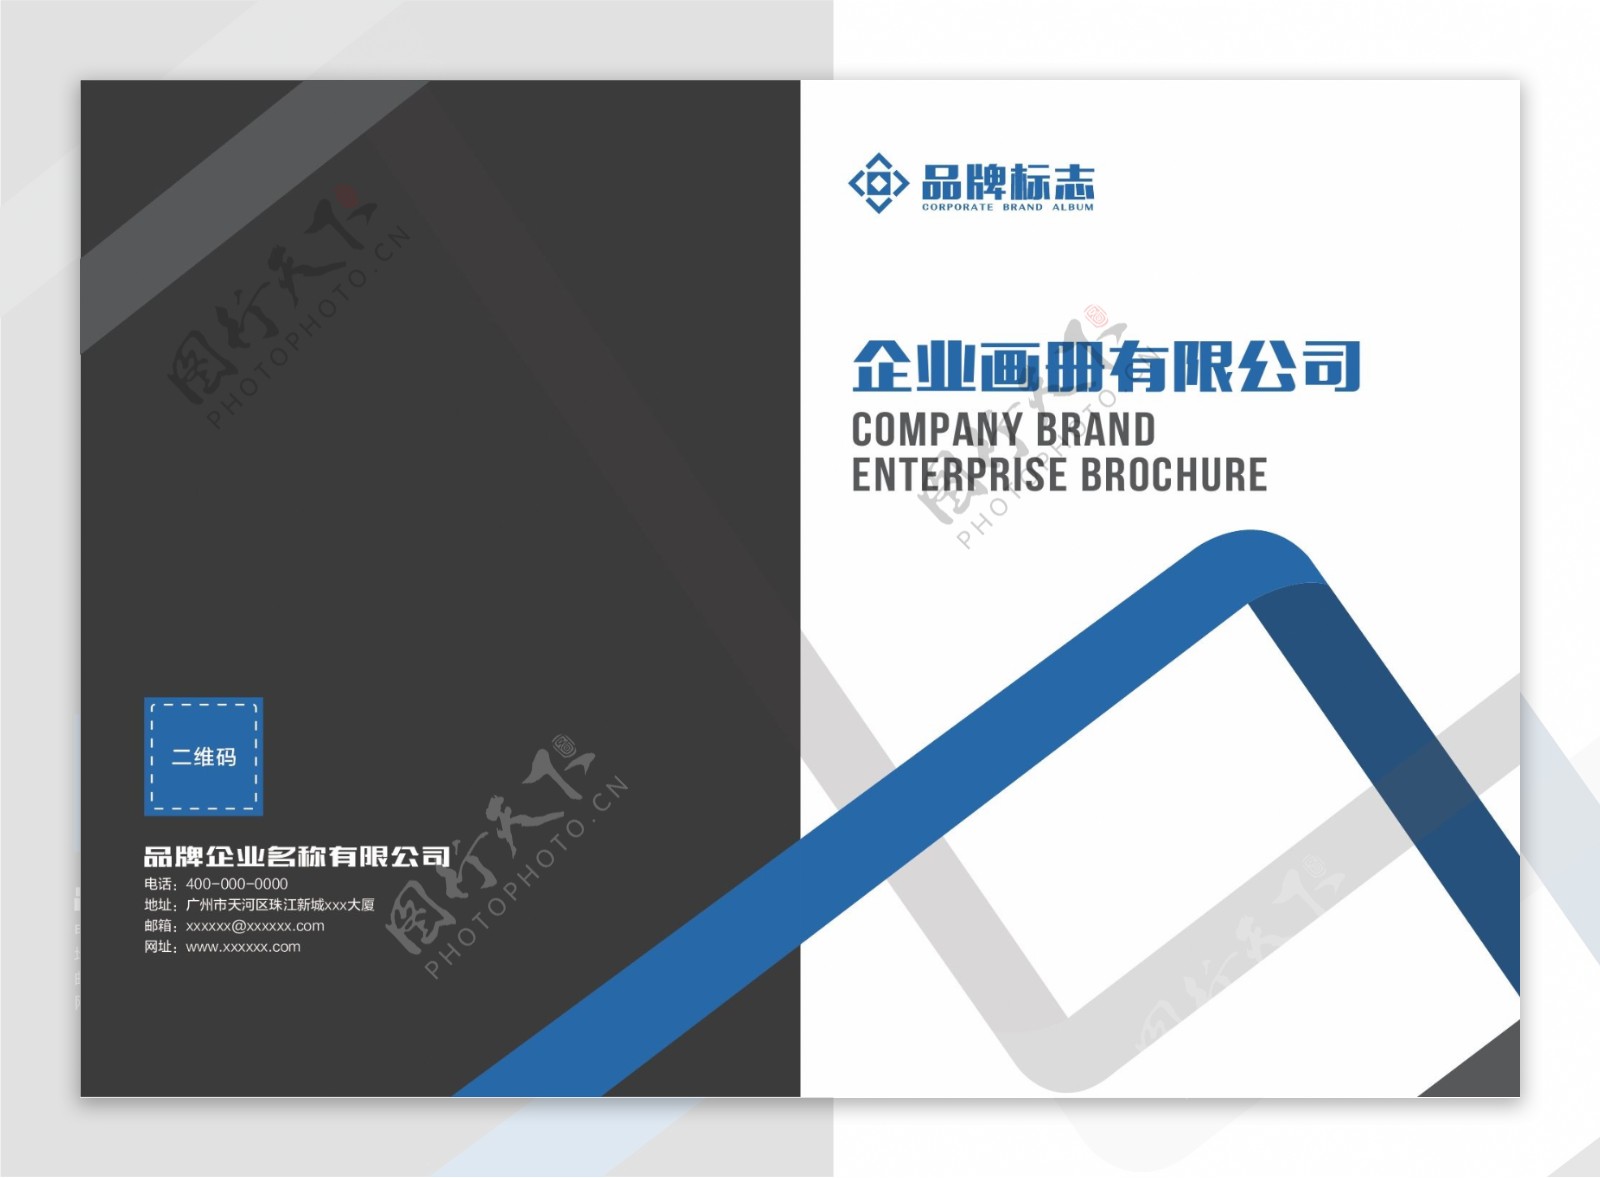 蓝色大气科技企业画册封面设计